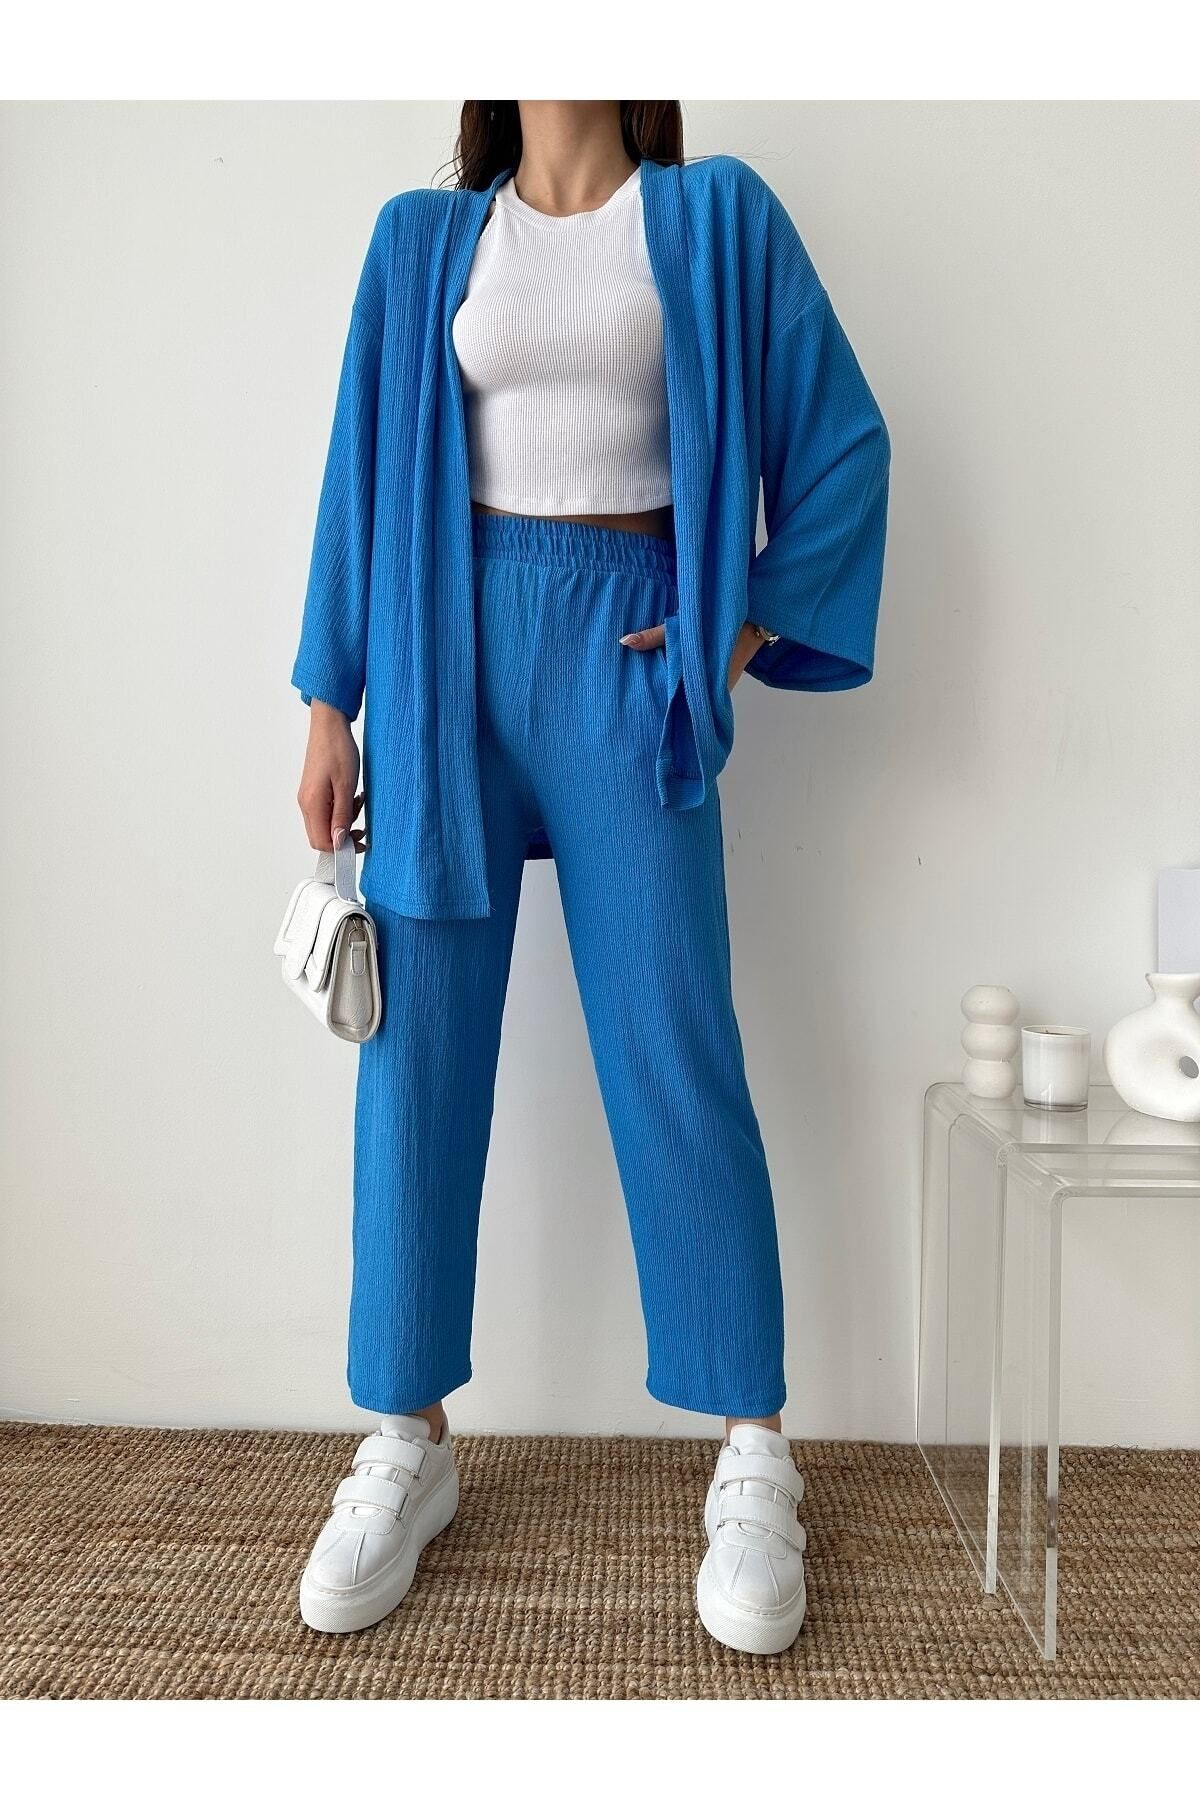 BEJNA Kadın Mavi Kimono Pantolon Örme Takımı